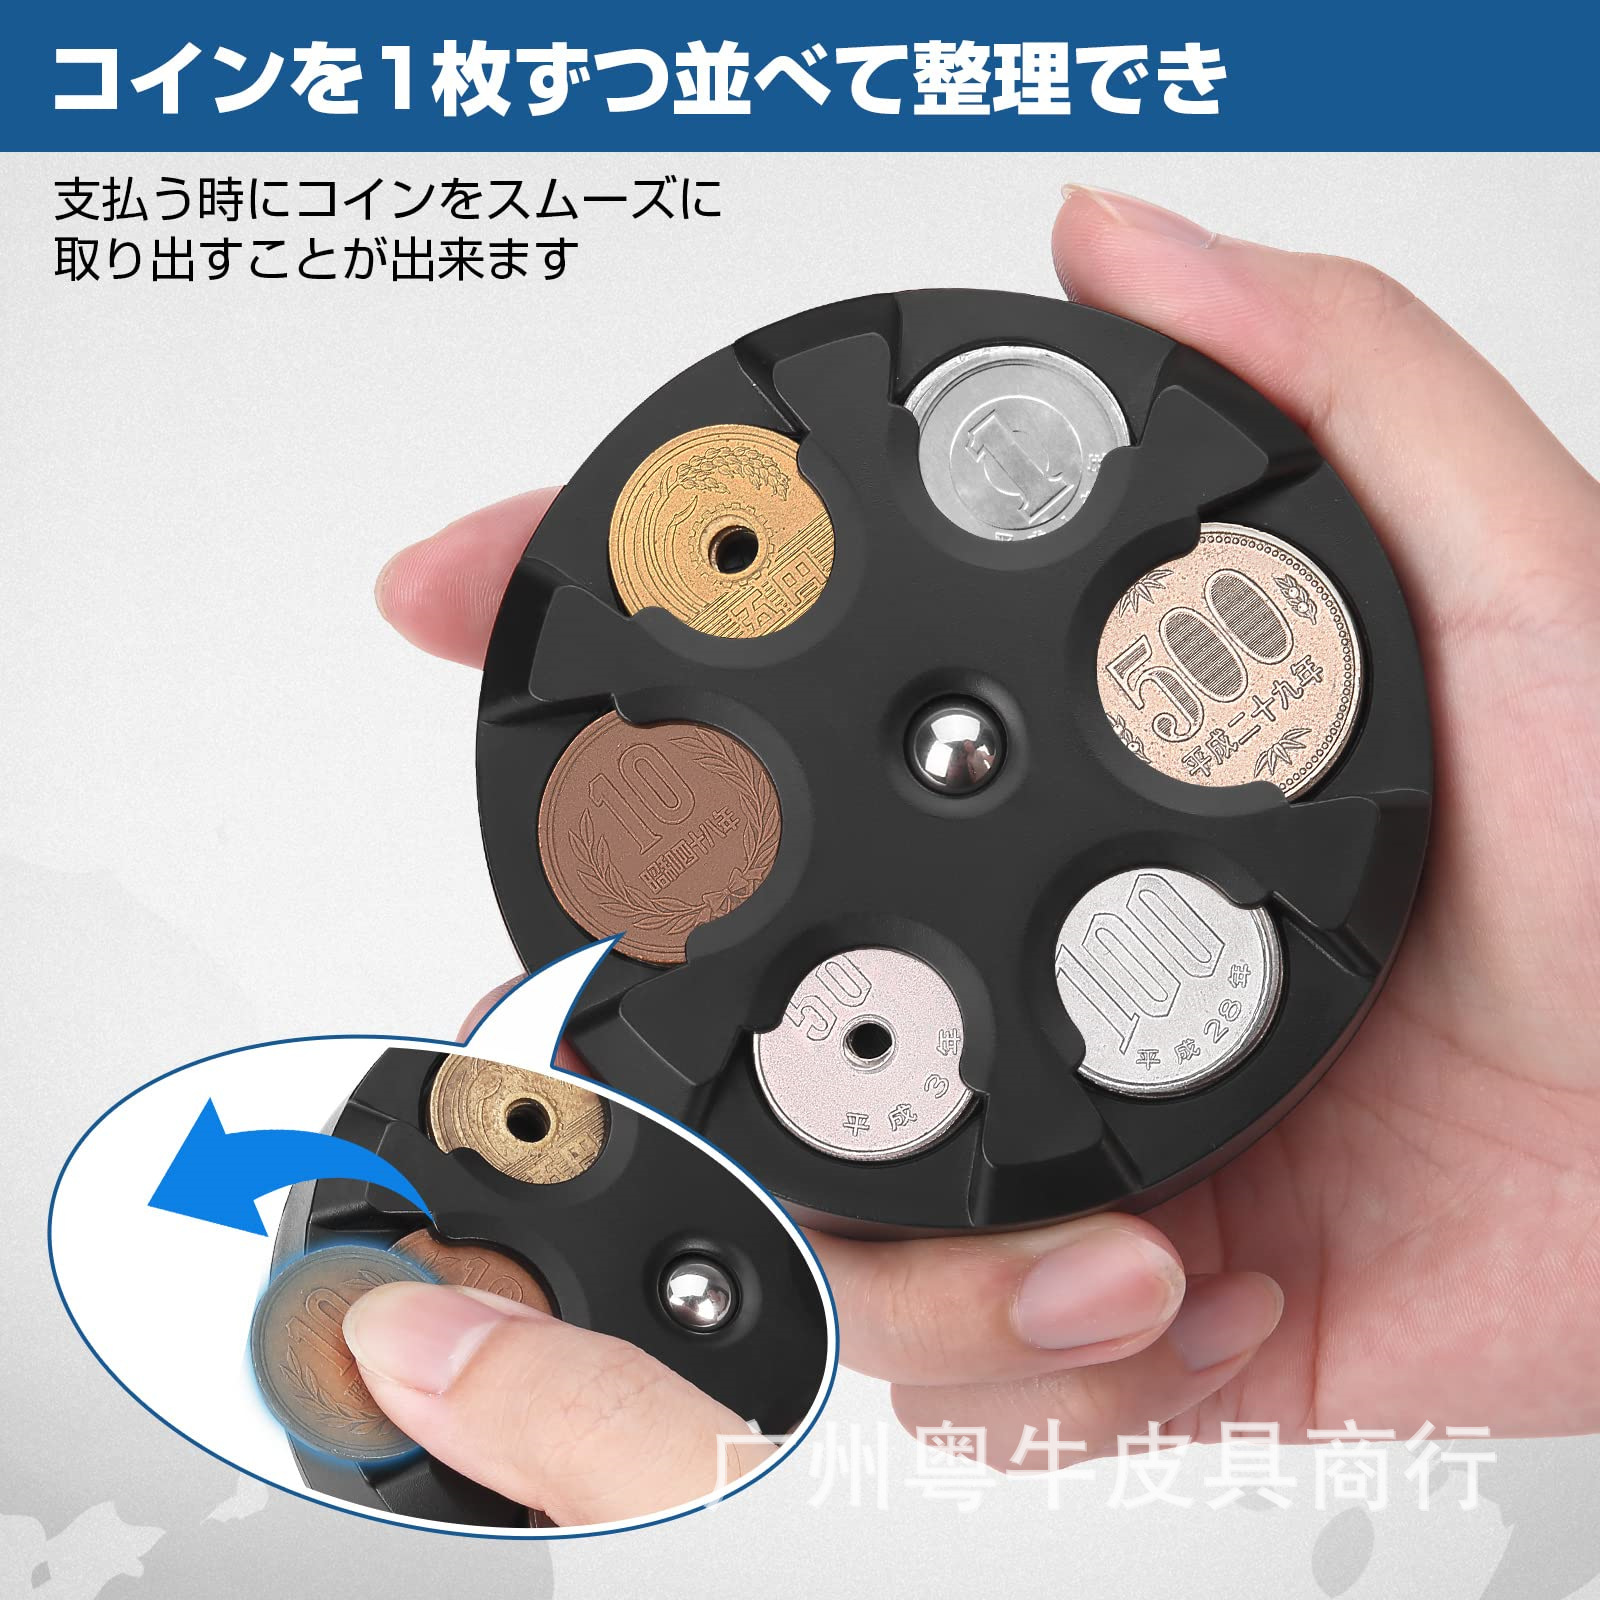 日式塑料圆形日币硬币夹多硬币位创意弹簧卡夹便携式男女款零钱夹-图1